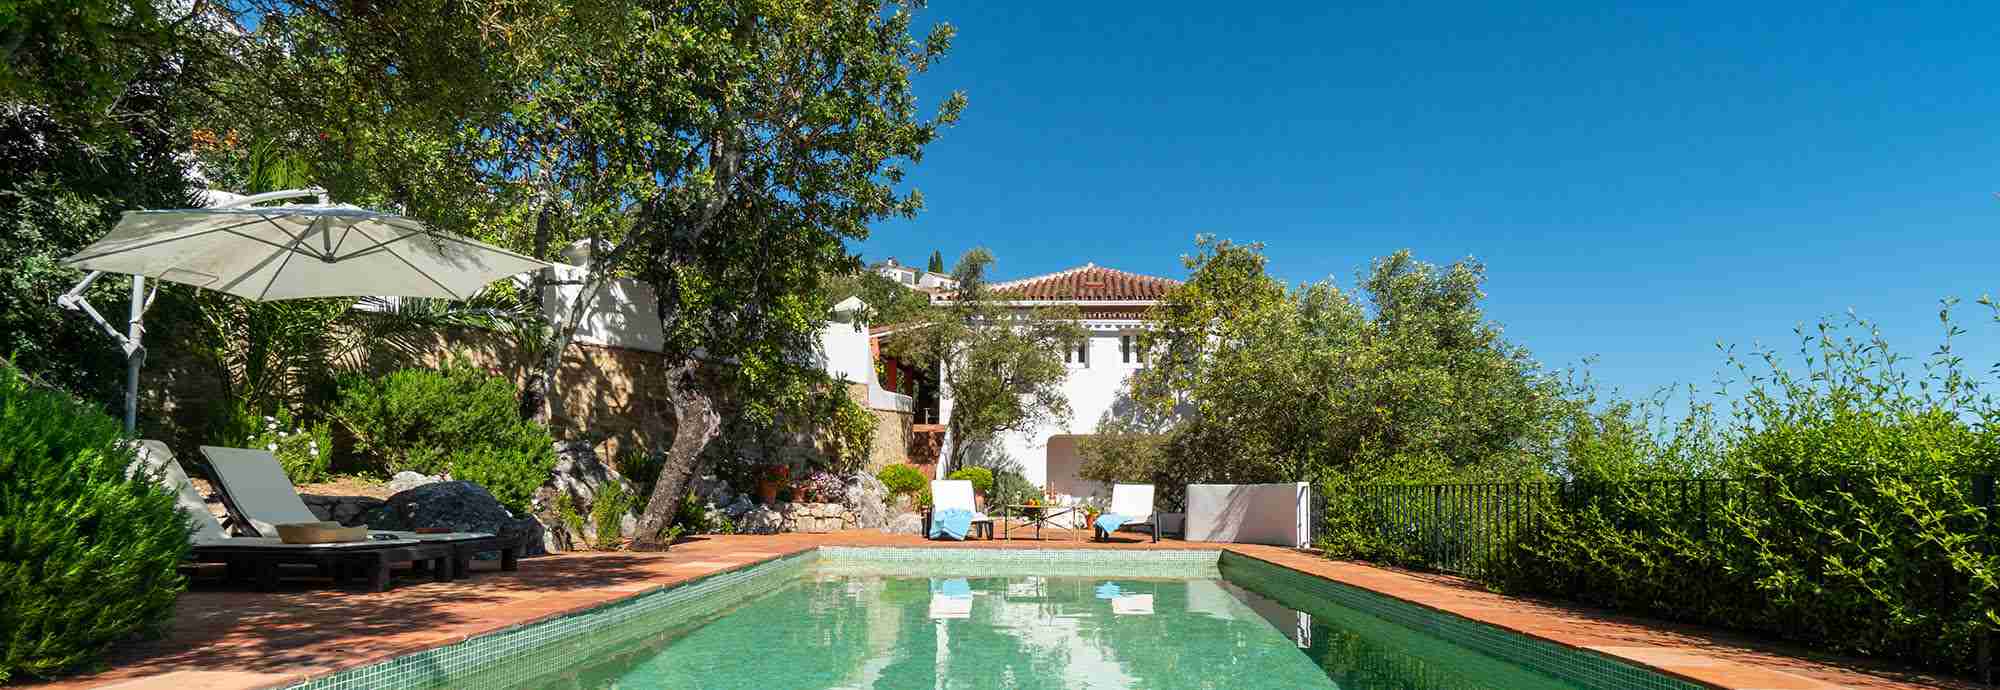 Preciosa casa rural con piscina privada a 3 minutos a pie de Gaucín